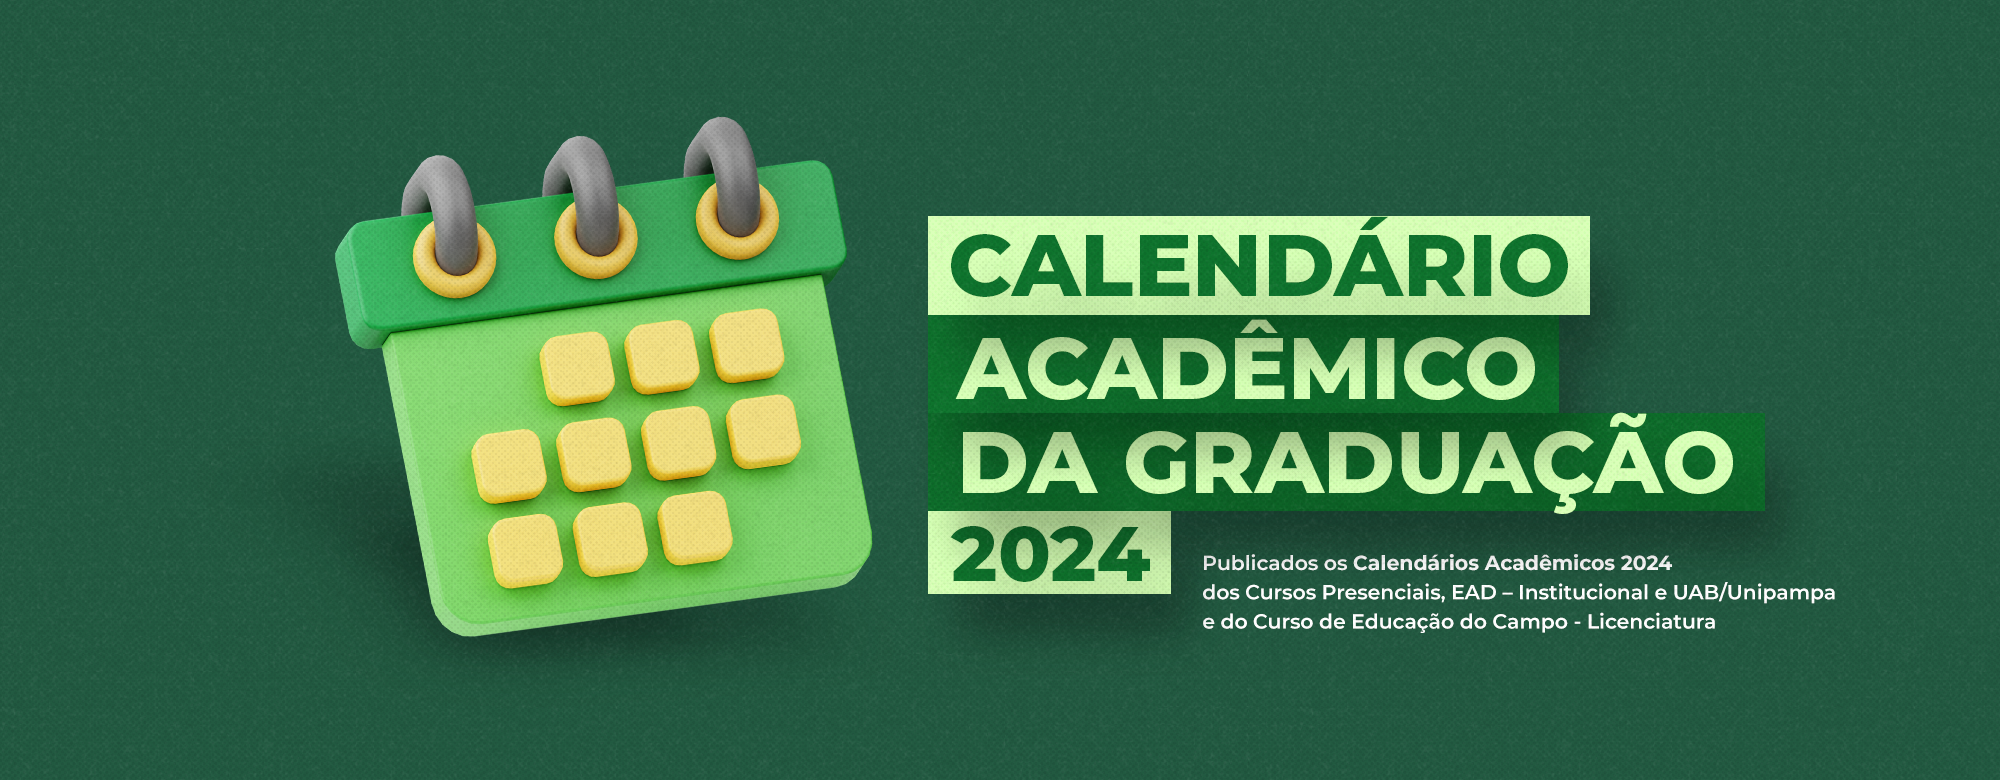 Unipampa aprova calendário acadêmico para 2024